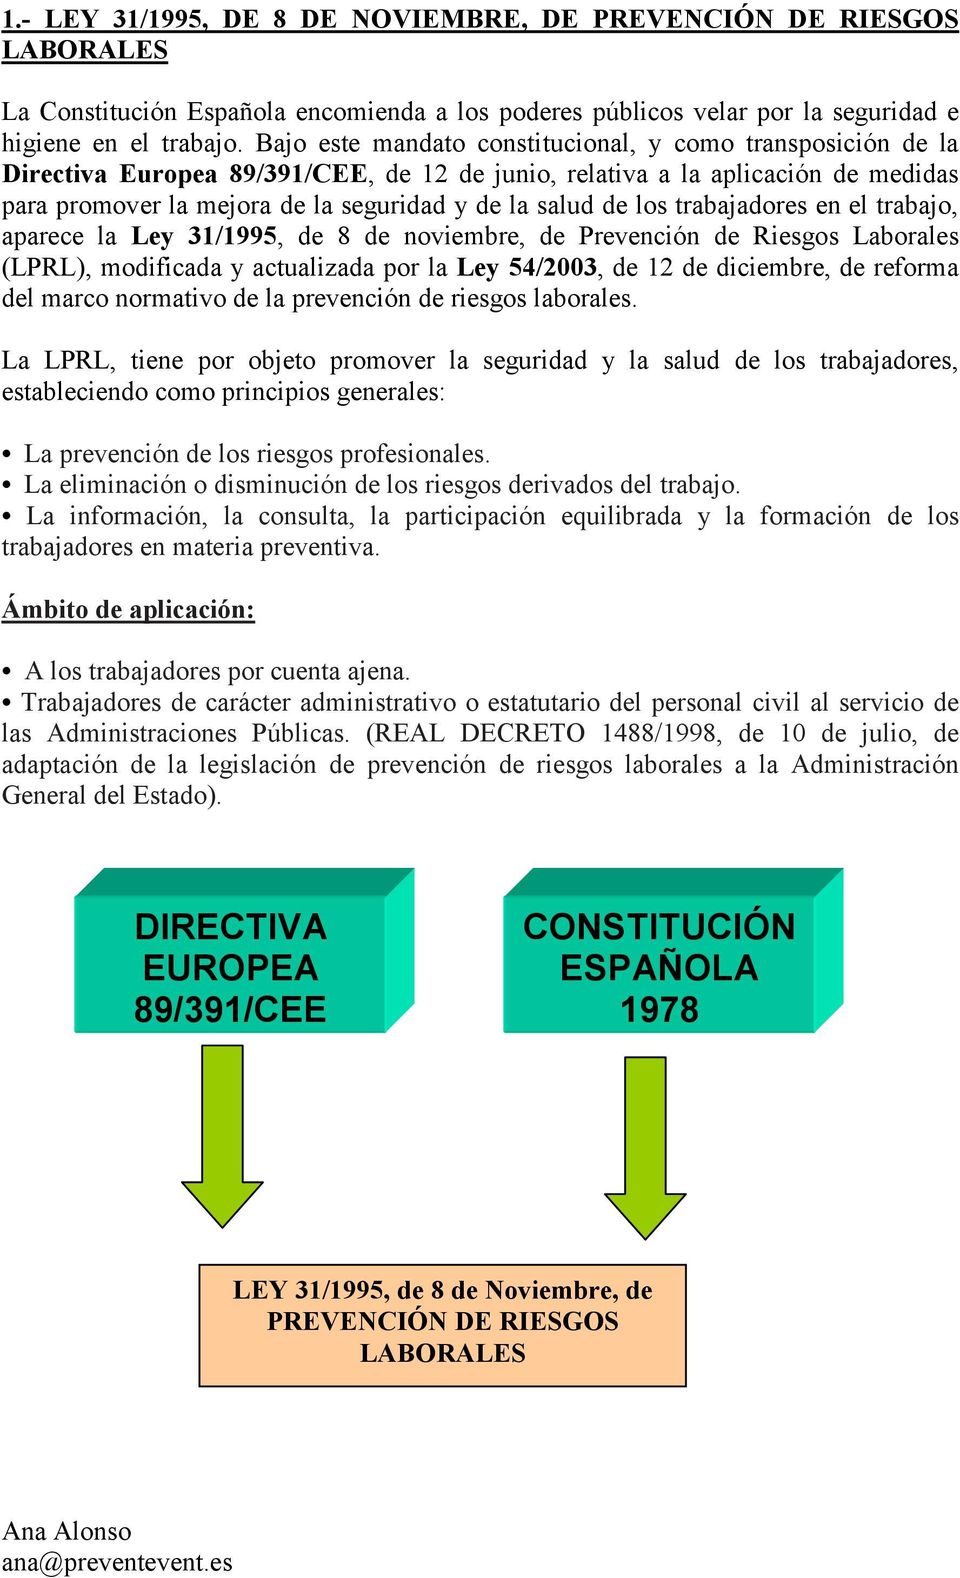 los trabajadores en el trabajo, aparece la Ley 31/1995, de 8 de noviembre, de Prevención de Riesgos Laborales (LPRL), modificada y actualizada por la Ley 54/2003, de 12 de diciembre, de reforma del